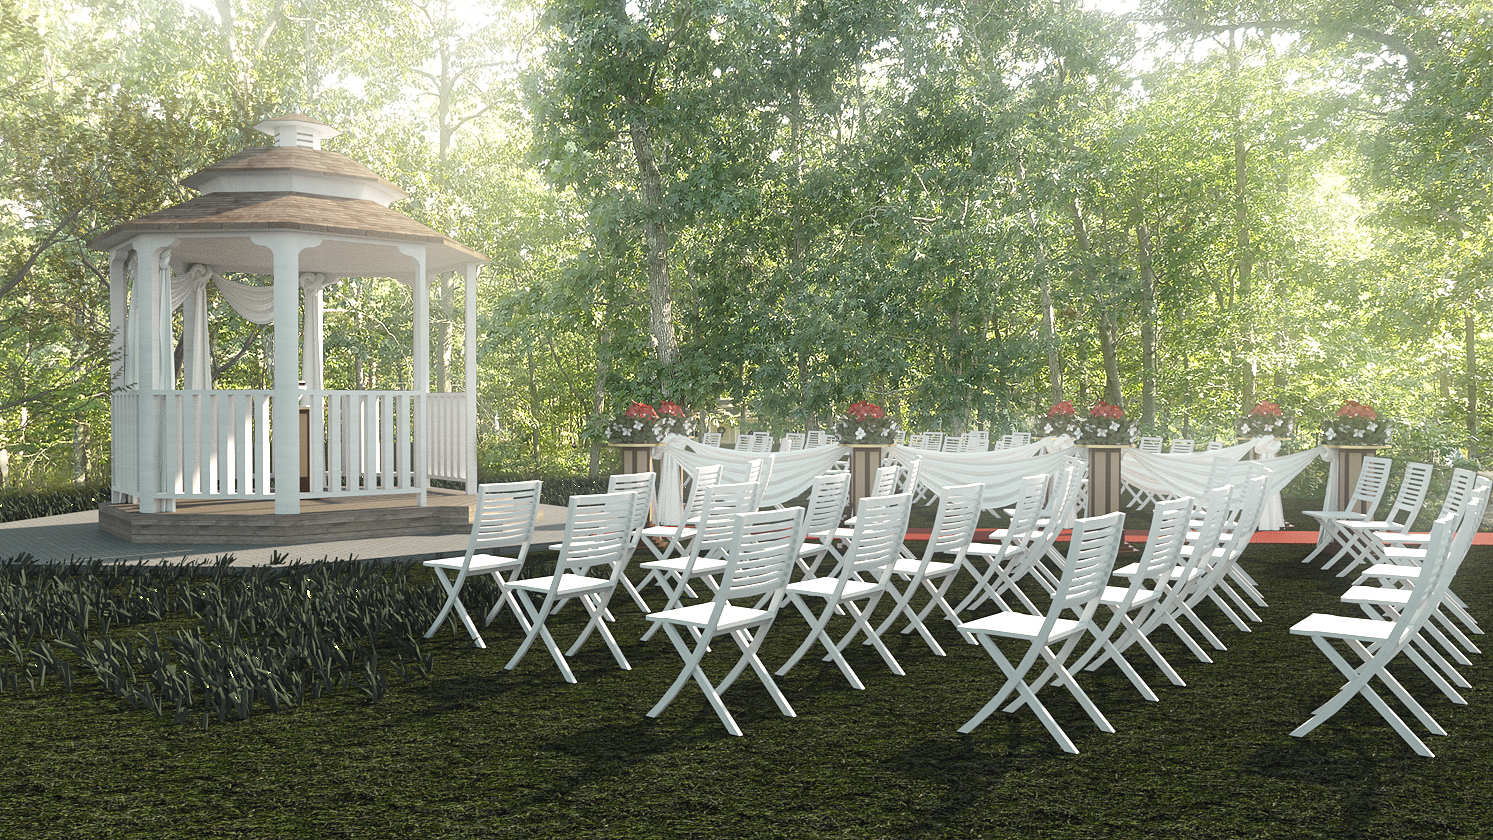 Garden Wedding by: Digitallab3D, 3D Models by Daz 3D